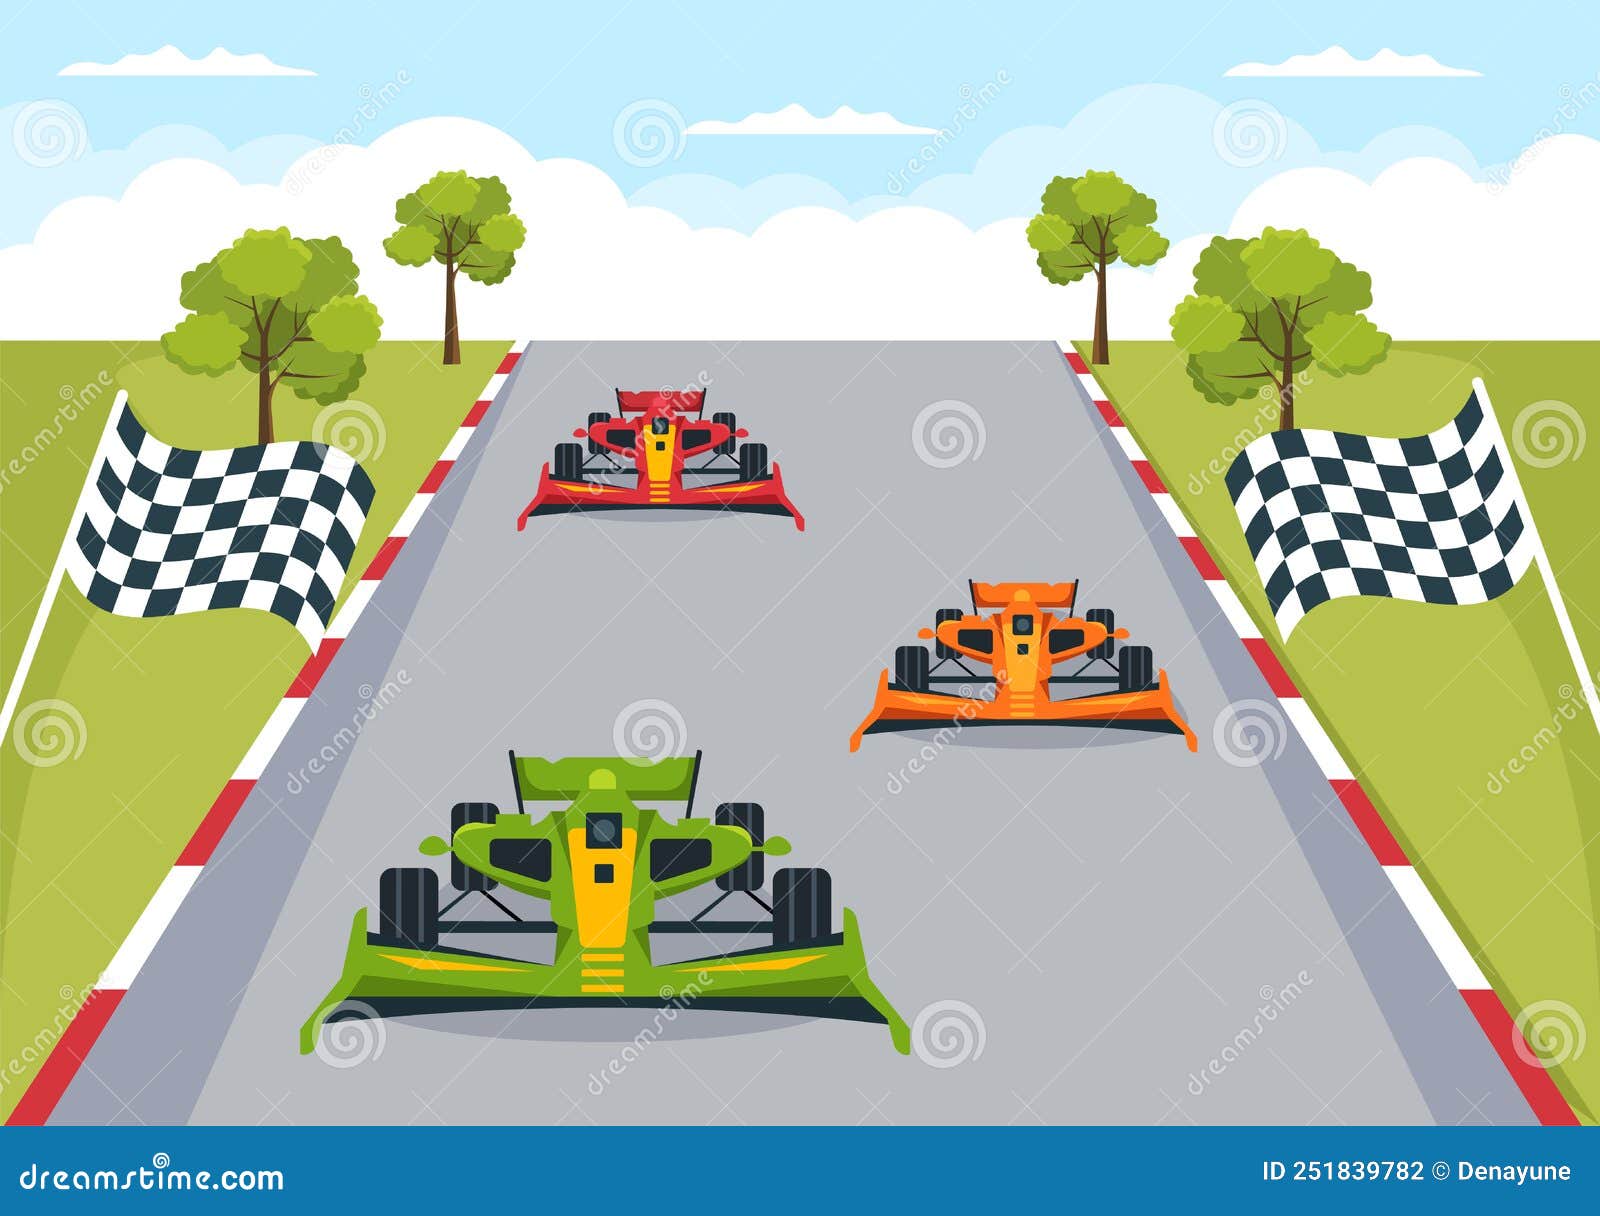 Fórmula De Corrida De Carros Alcança Em Circuito De Corrida a Ilustração De  Desenho Animado Da Linha De Chegada Para Ganhar O Camp Ilustração do Vetor  - Ilustração de velocidade, desempenho: 251839782